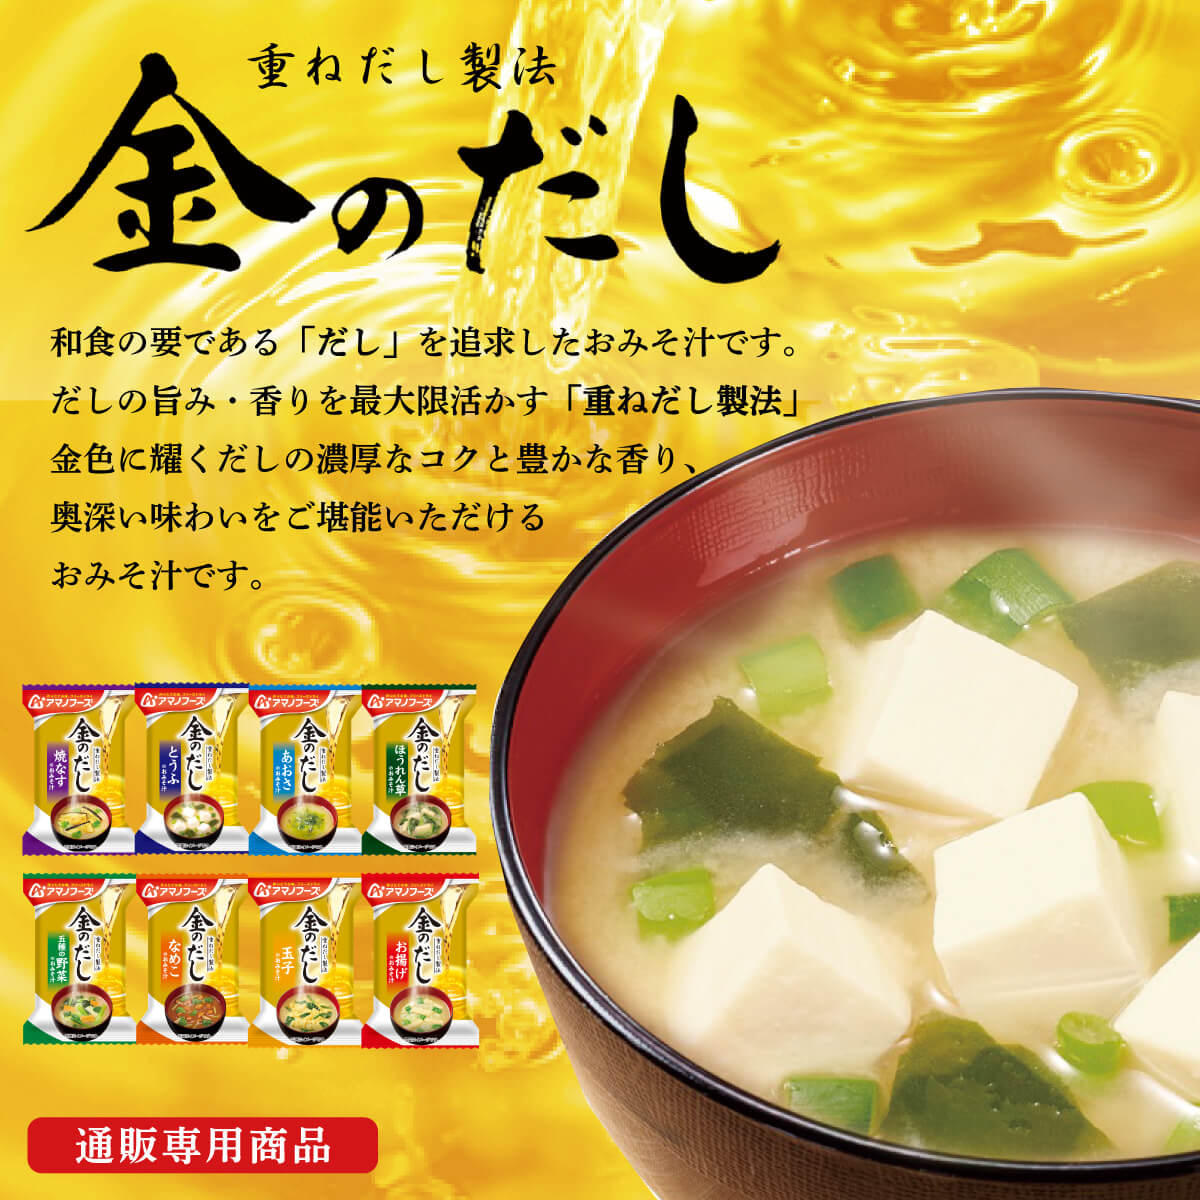 インスタントスープ・味噌汁みそ汁セット100袋 ①